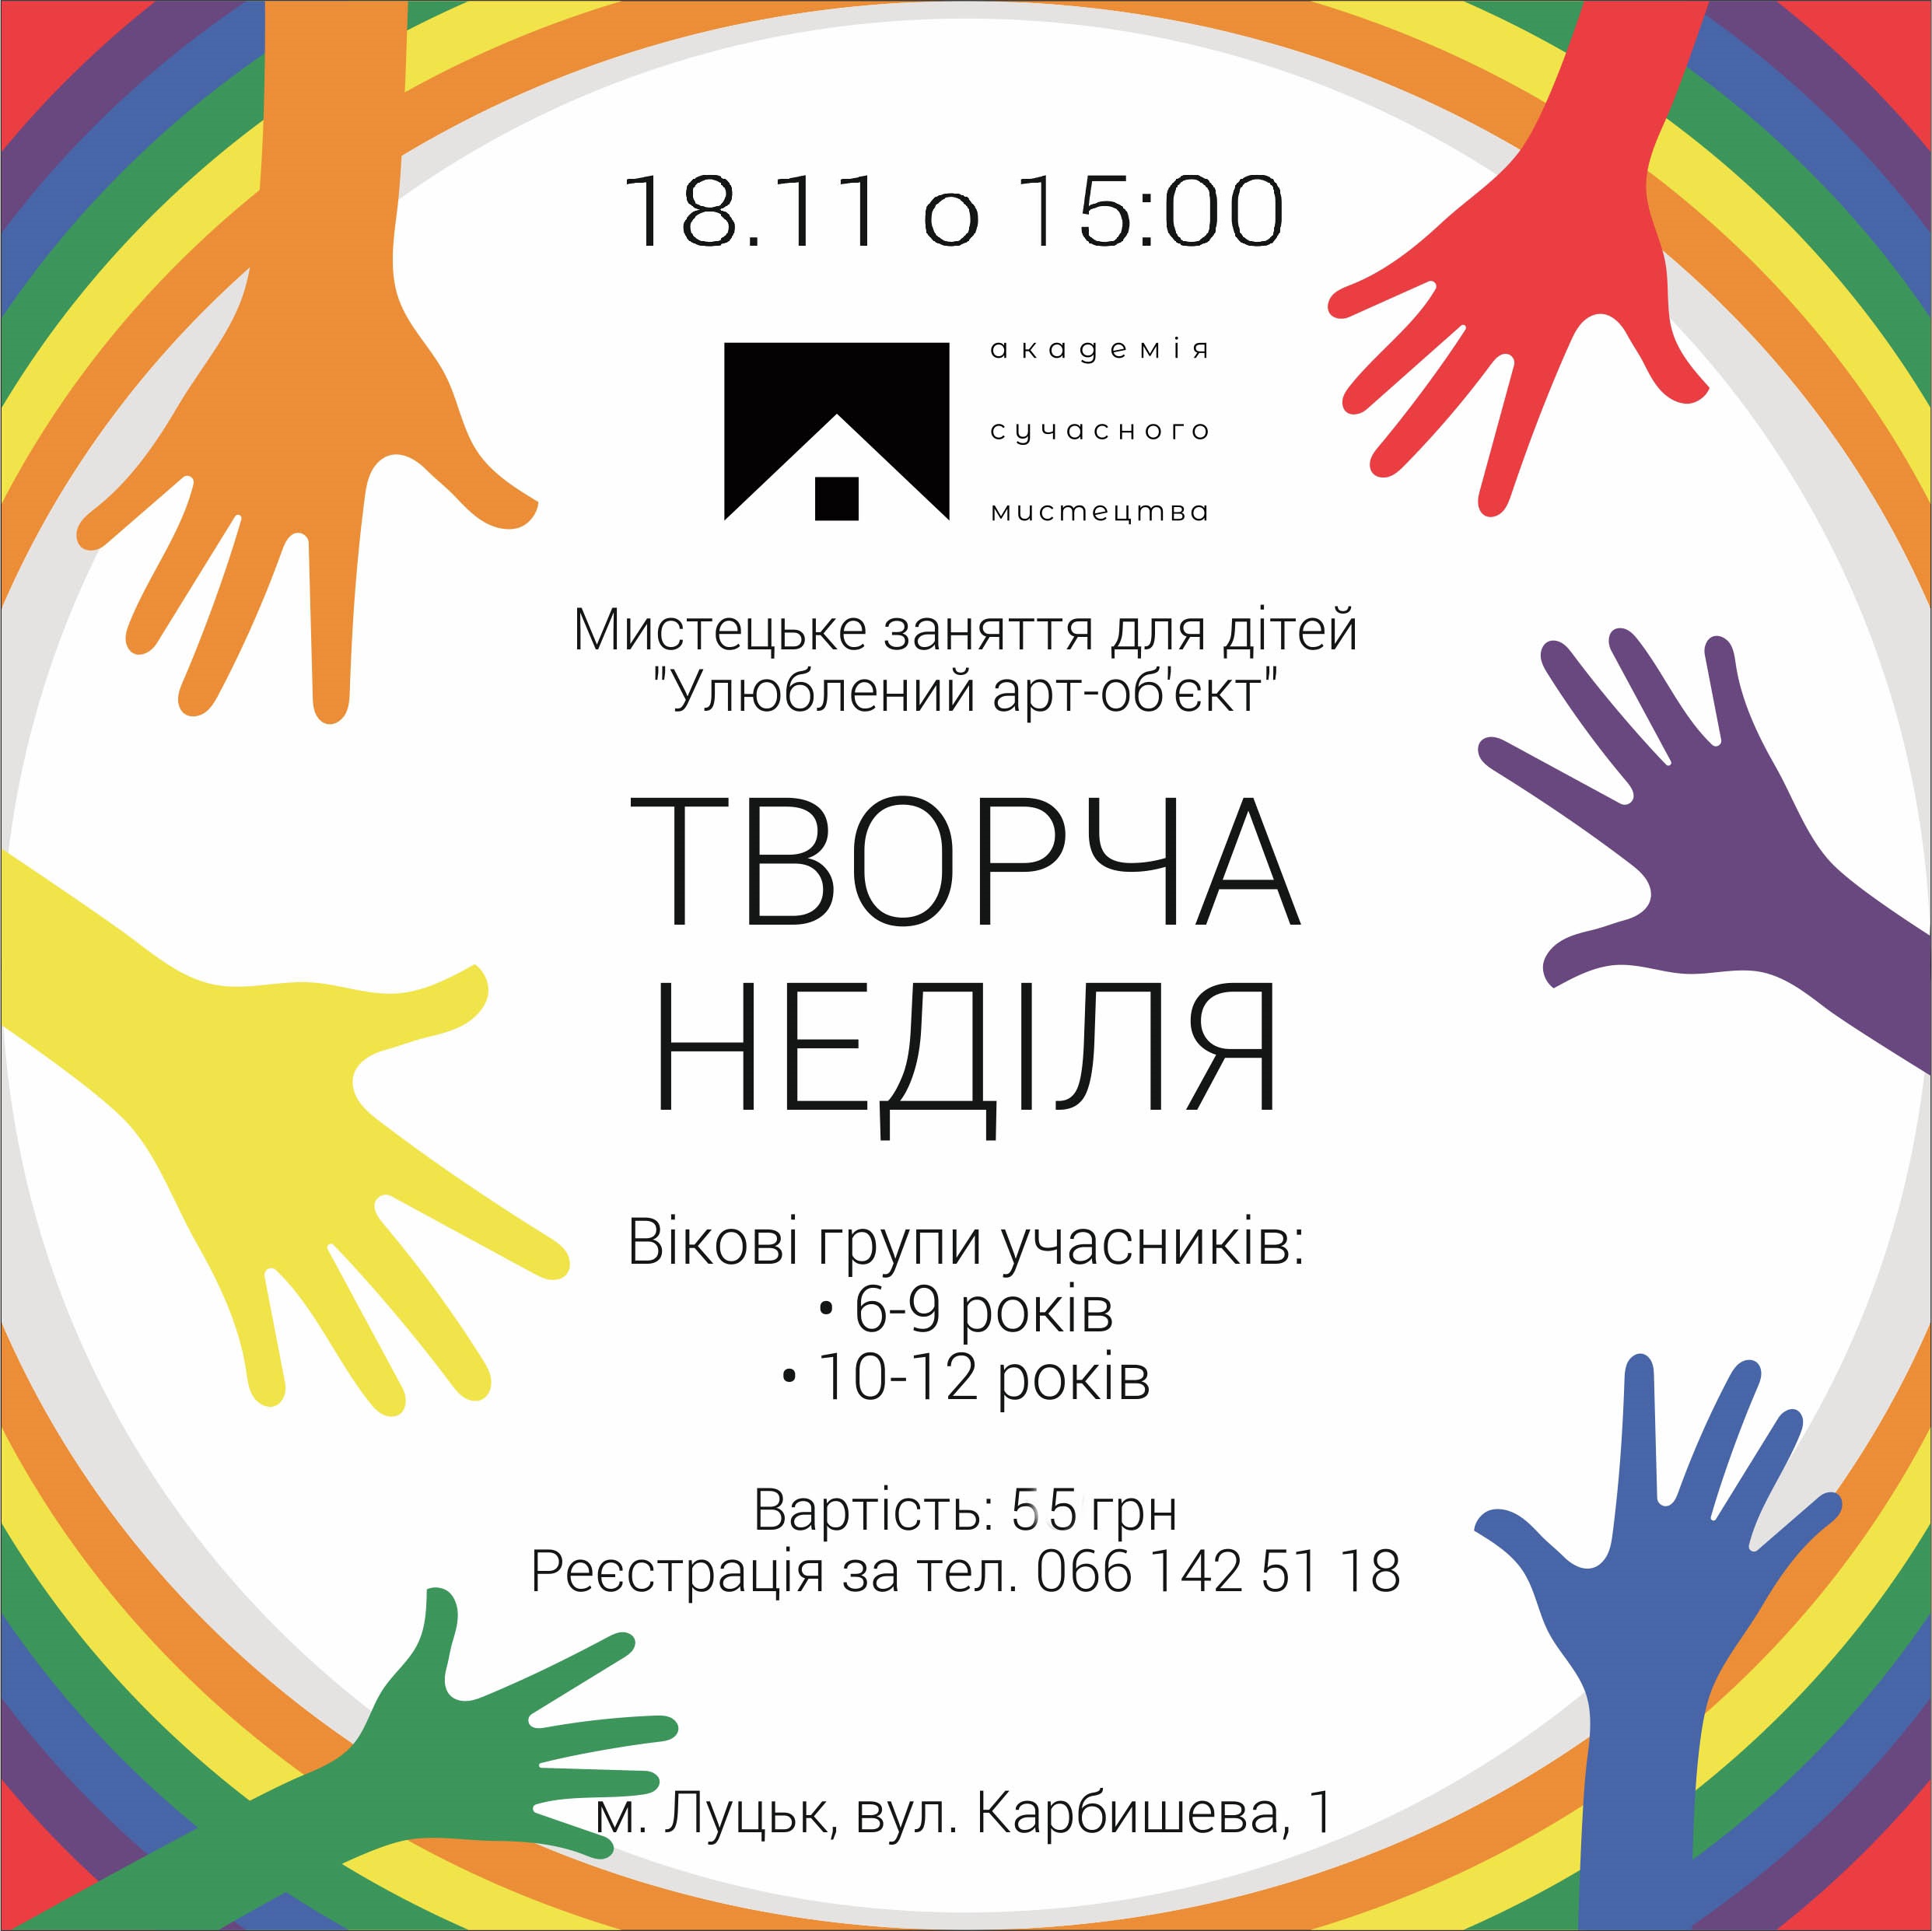 (Українська) Запрошуємо на “Творчу неділю” 18 листопада